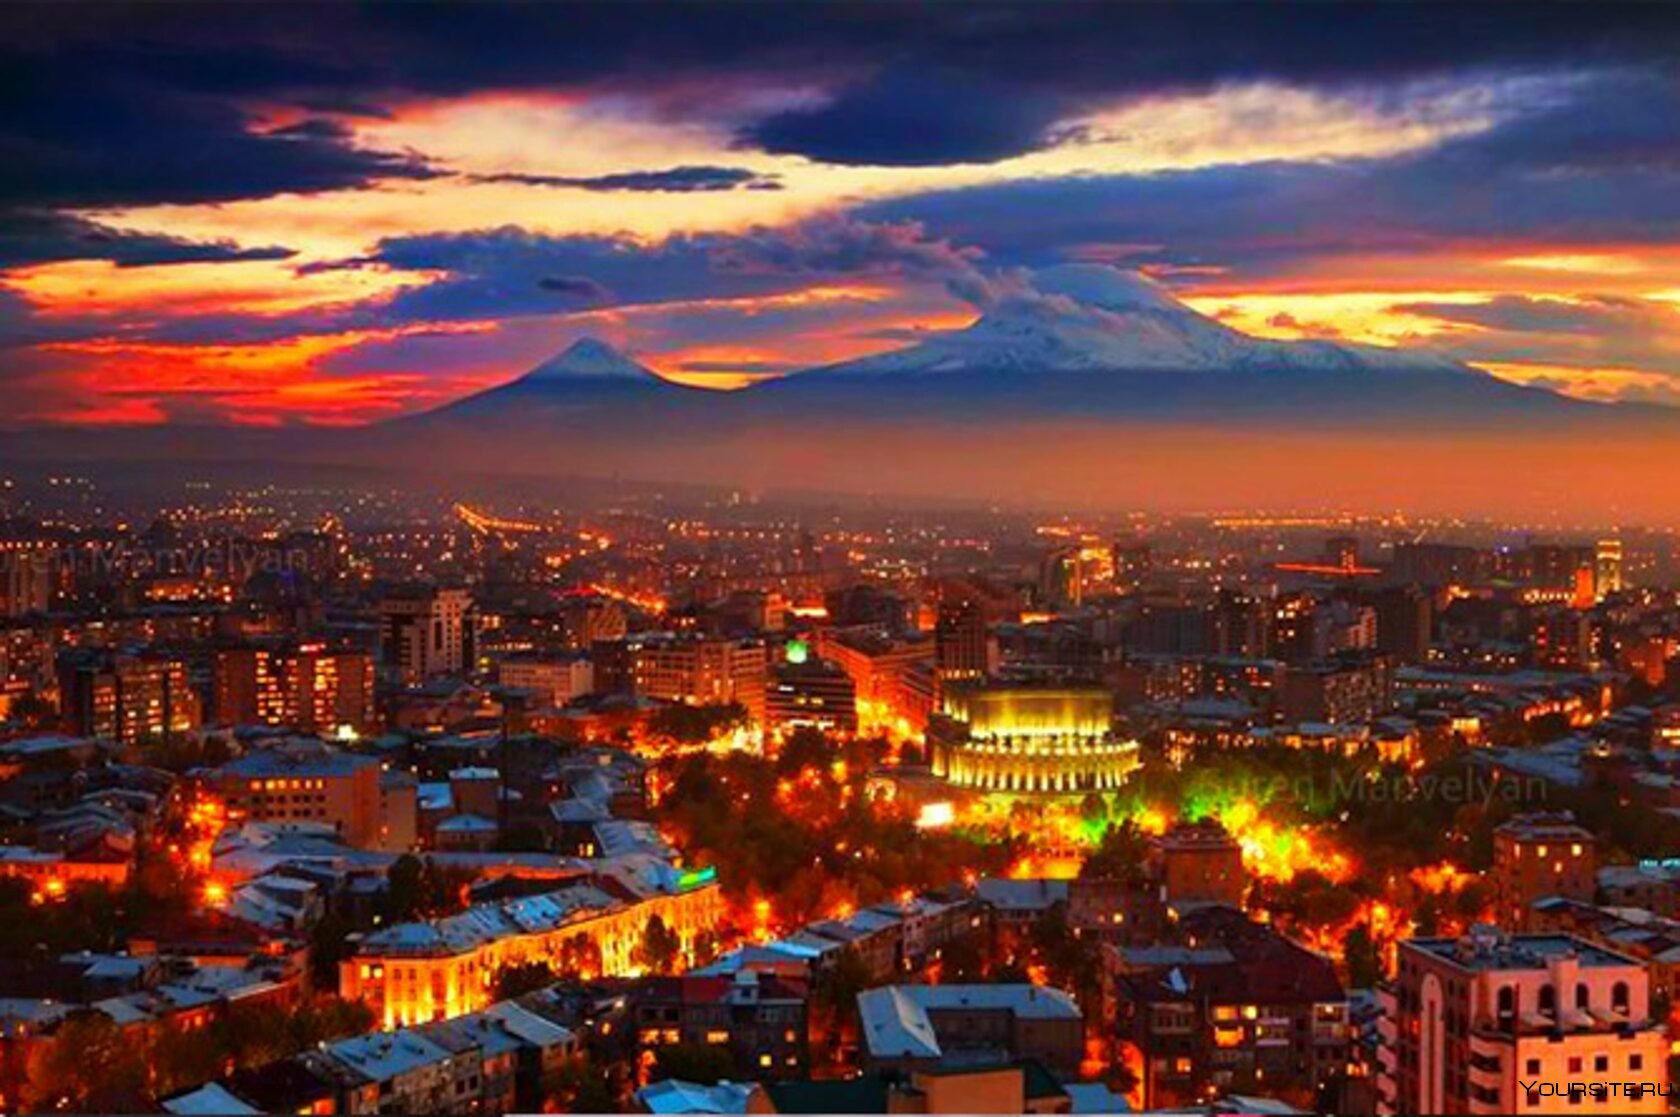 Армения город ереван